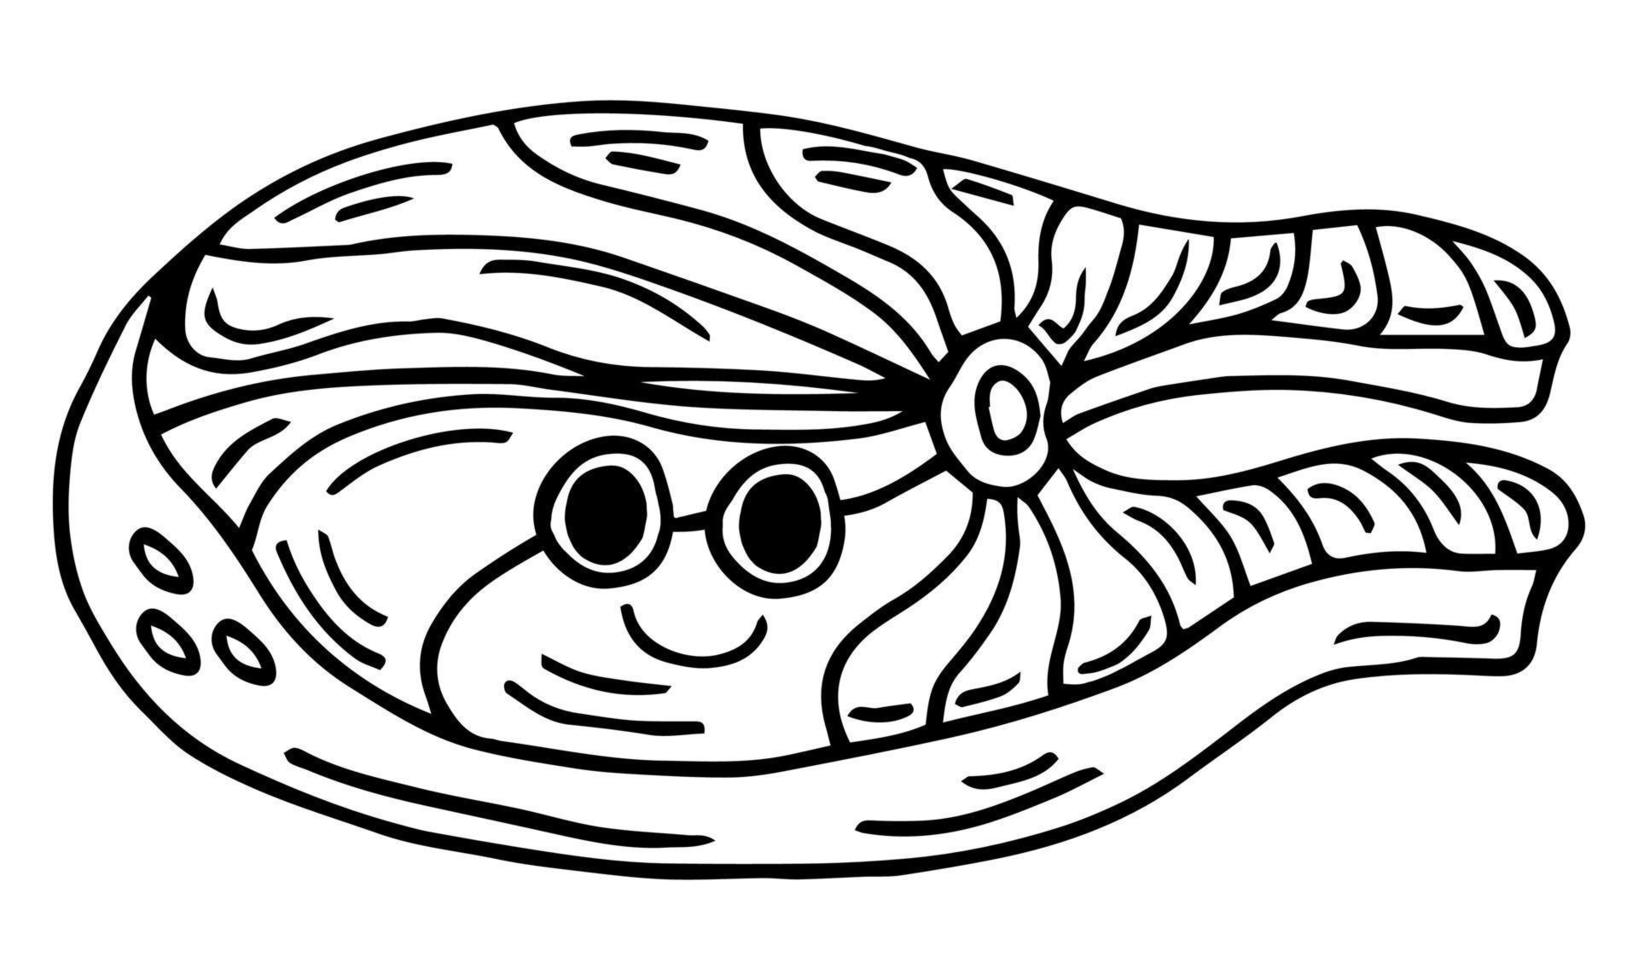 mignon, drôle, poisson rouge, saumon, agitant, main, caractère. icône d'illustration kawaii de dessin animé dessiné à la main de vecteur. isolé sur fond blanc. concept de caractère saumon poisson rouge vecteur